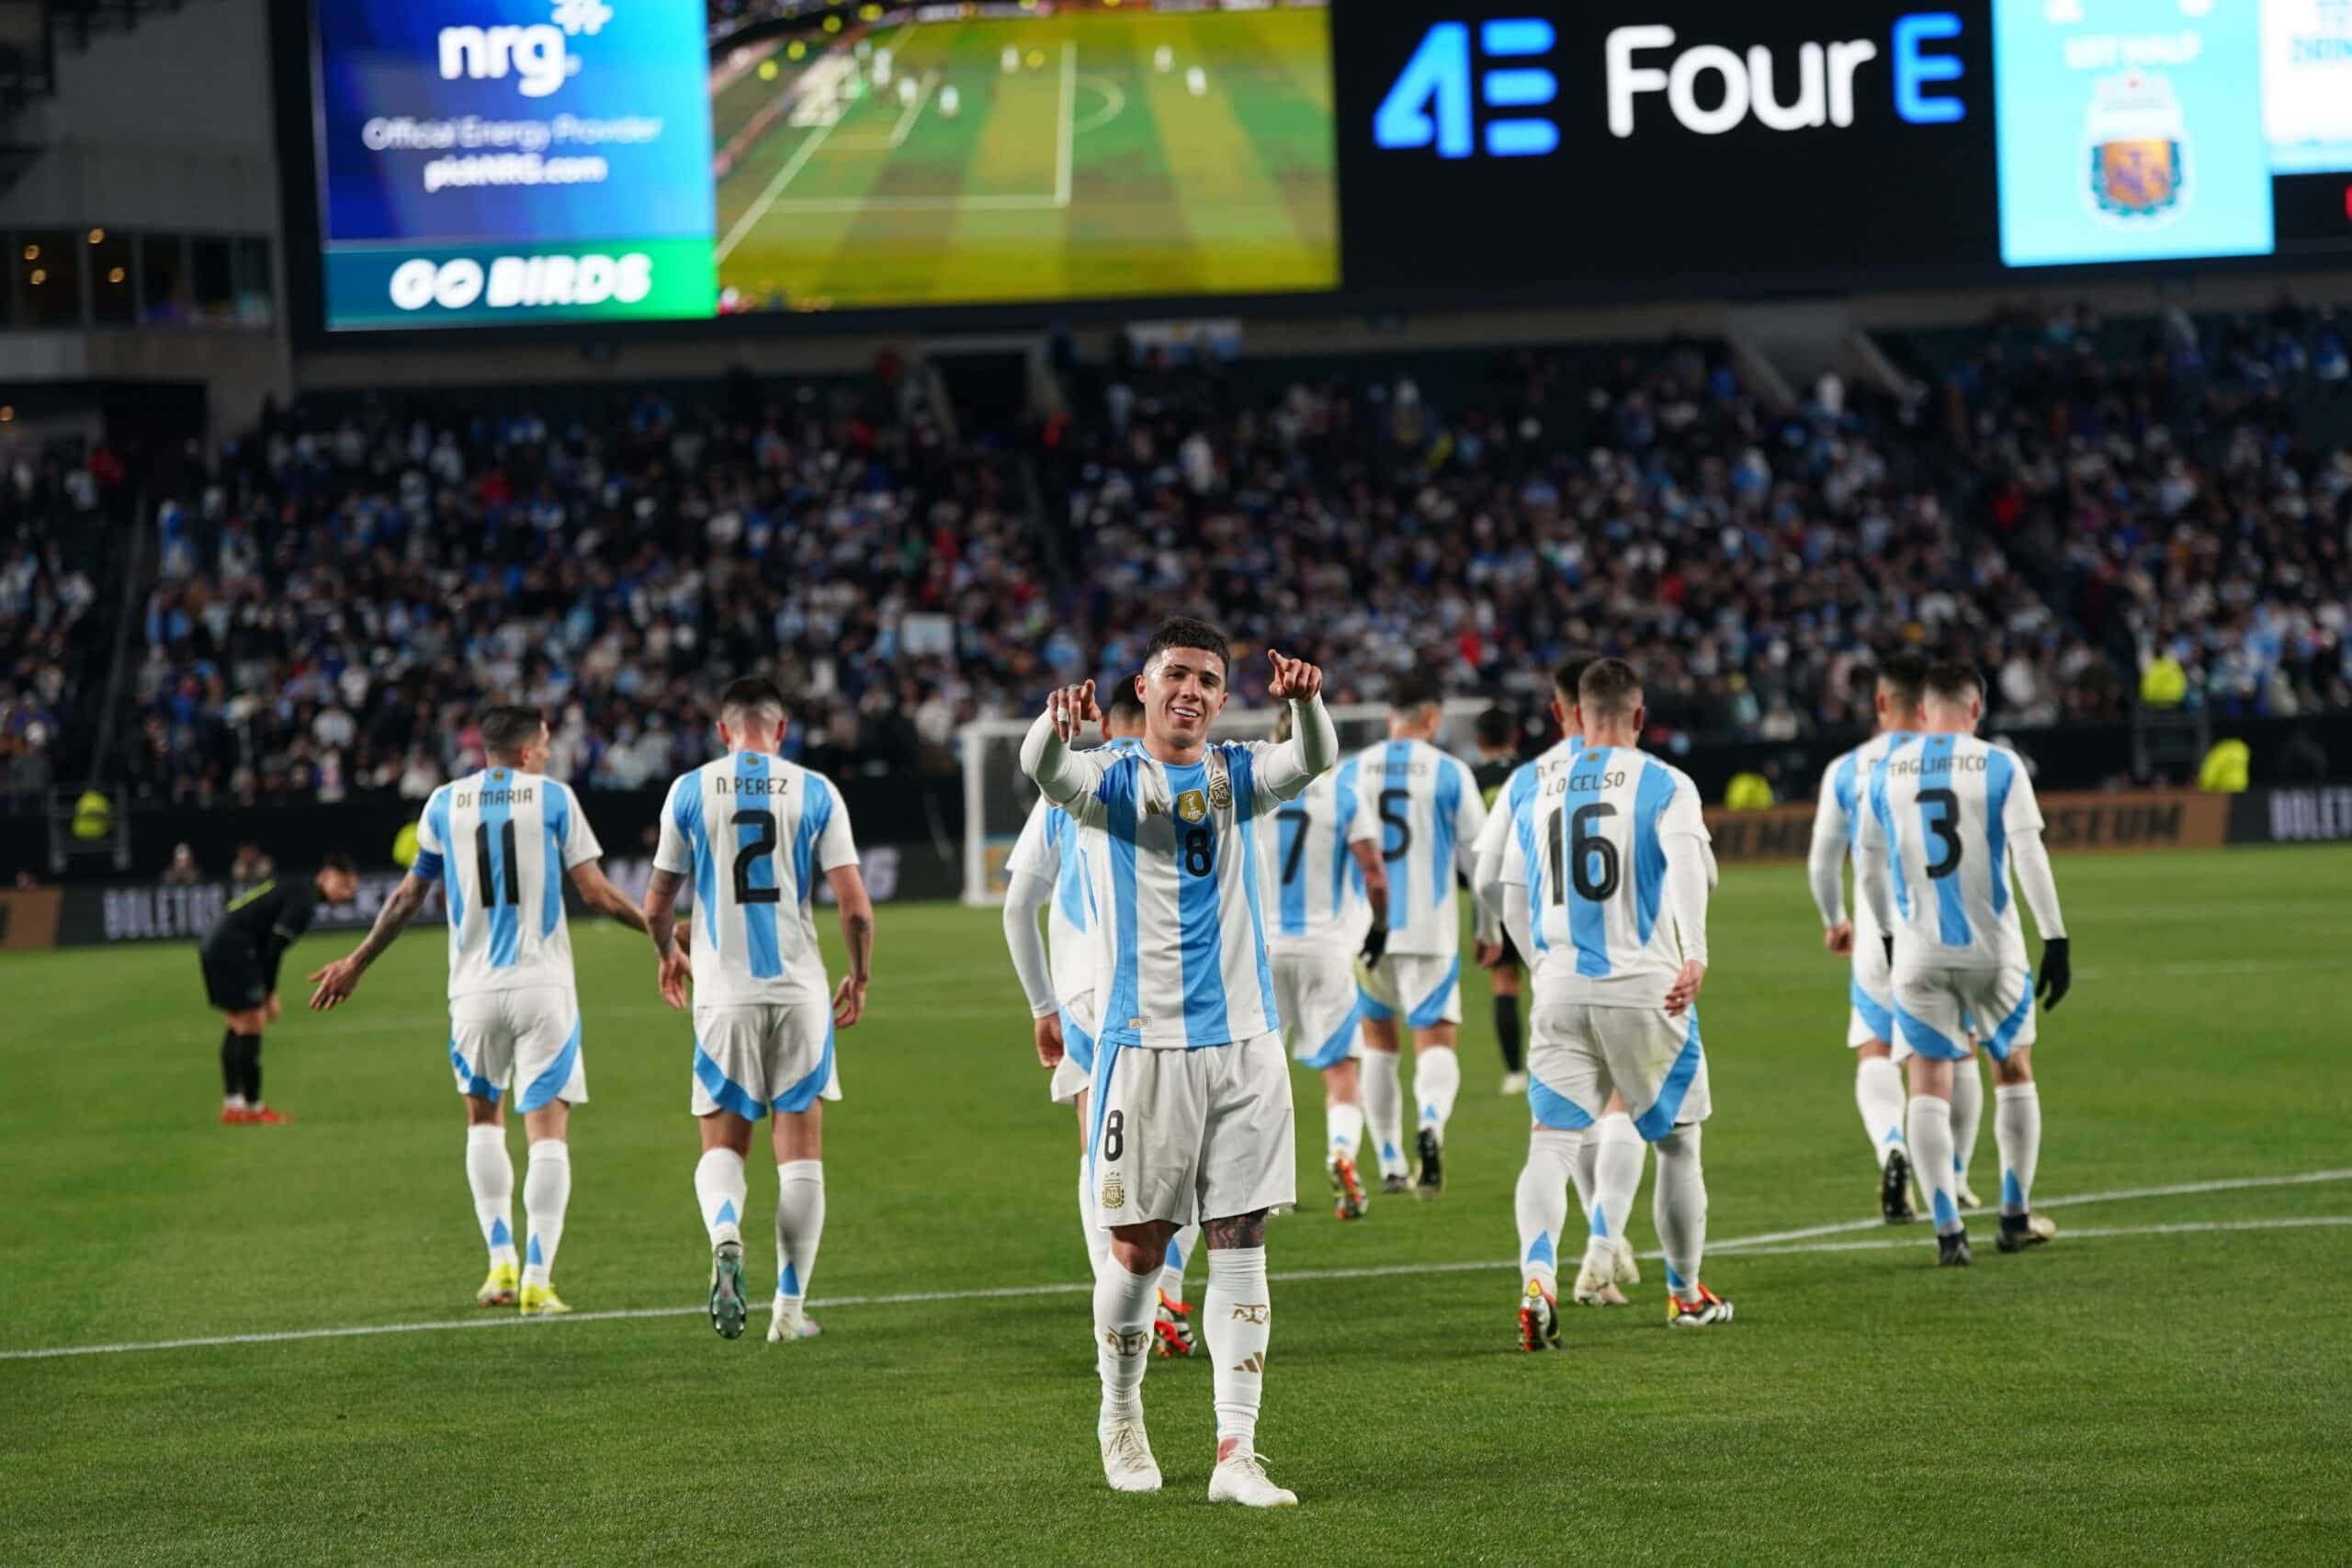 Selección de Argentina